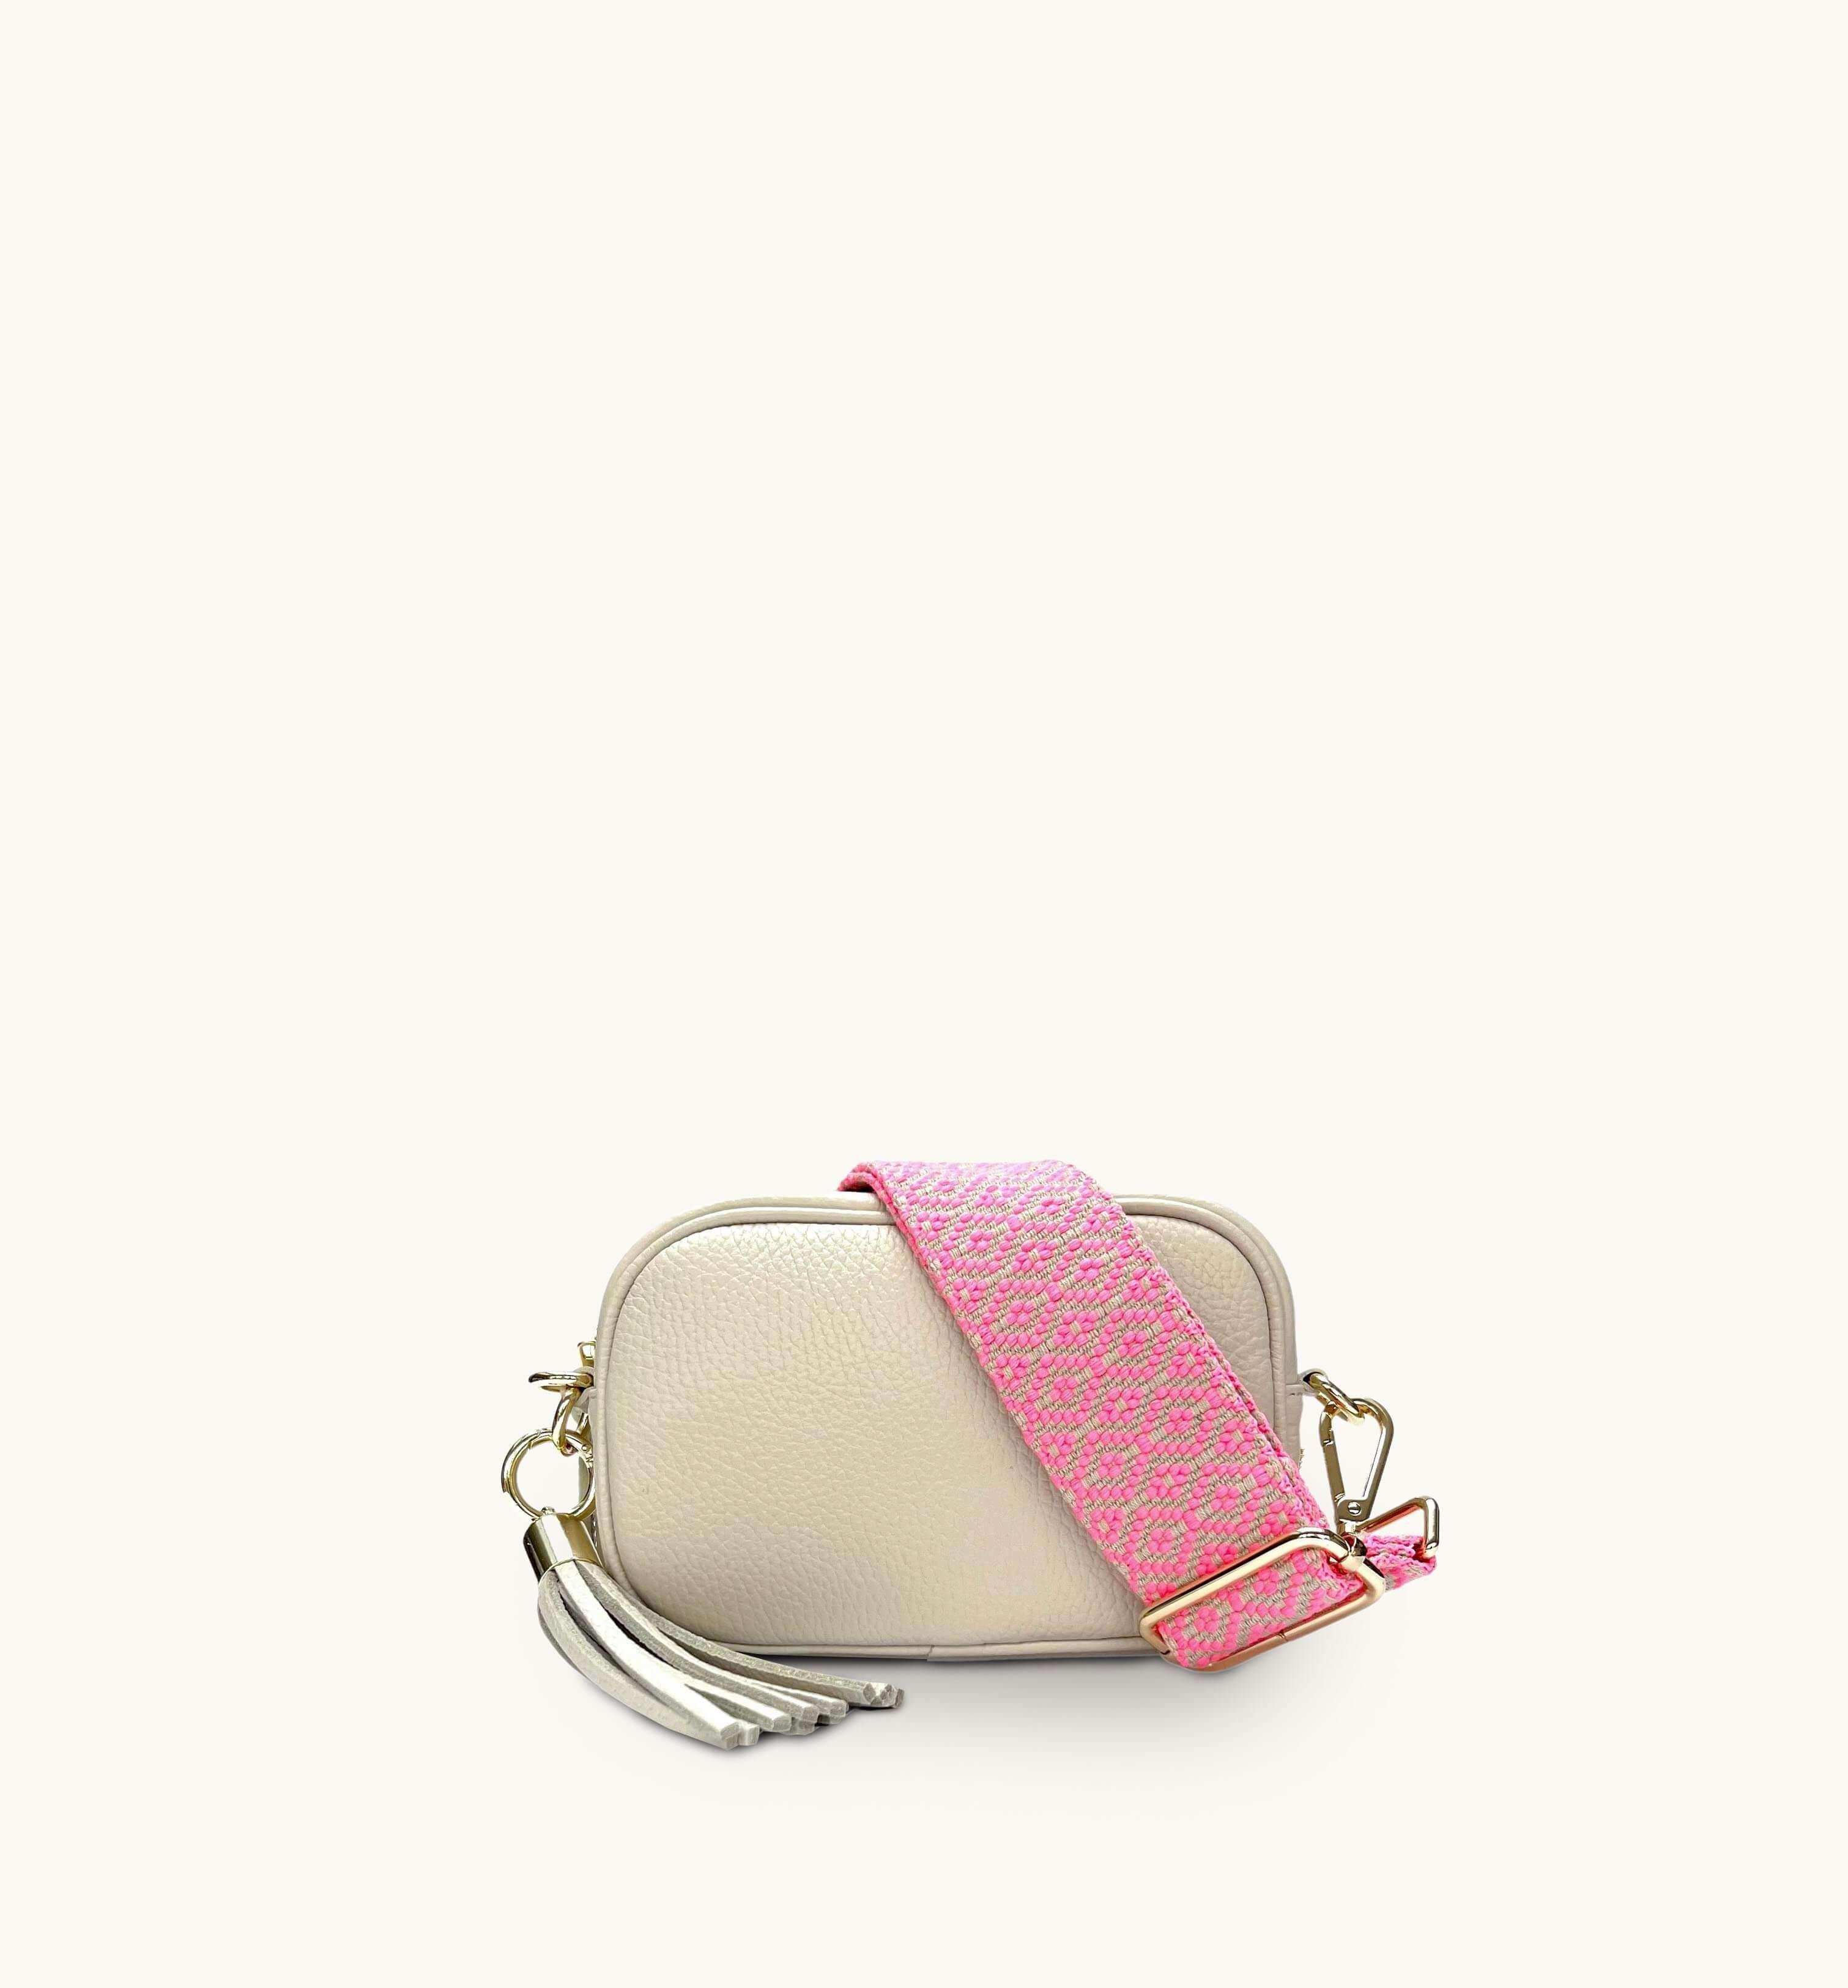 Кожаная сумка для телефона Mini с кисточками и неоново-розовым ремешком с вышивкой крестиком Apatchy London, бежевый